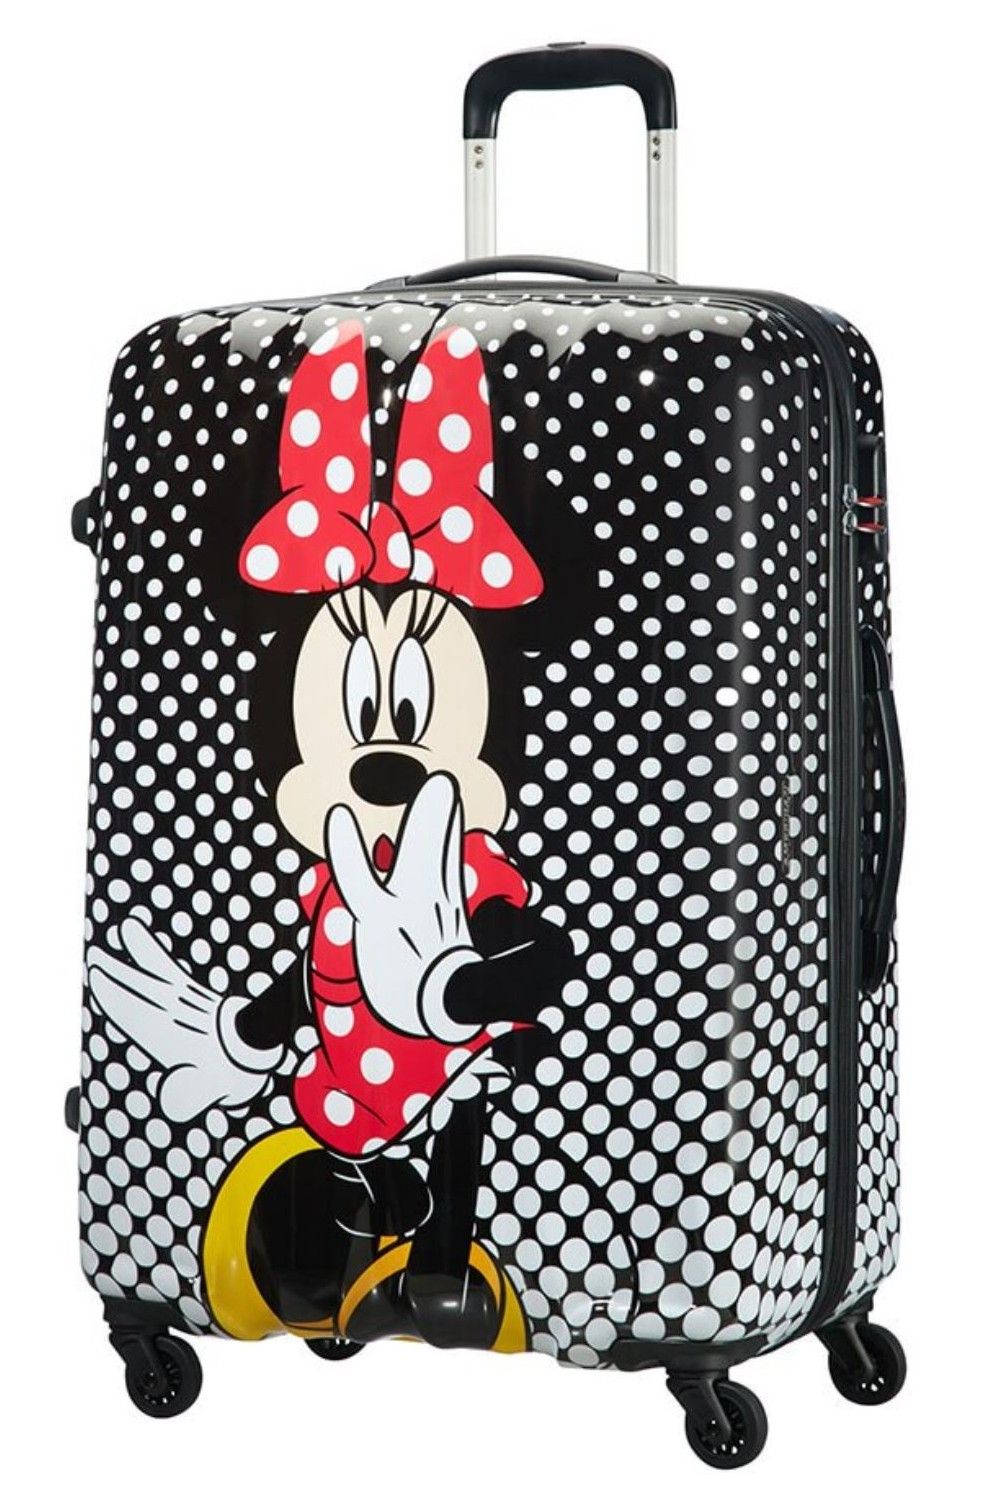 AT children's suitcase Minnie Polka Dots 75cm 88 Liter